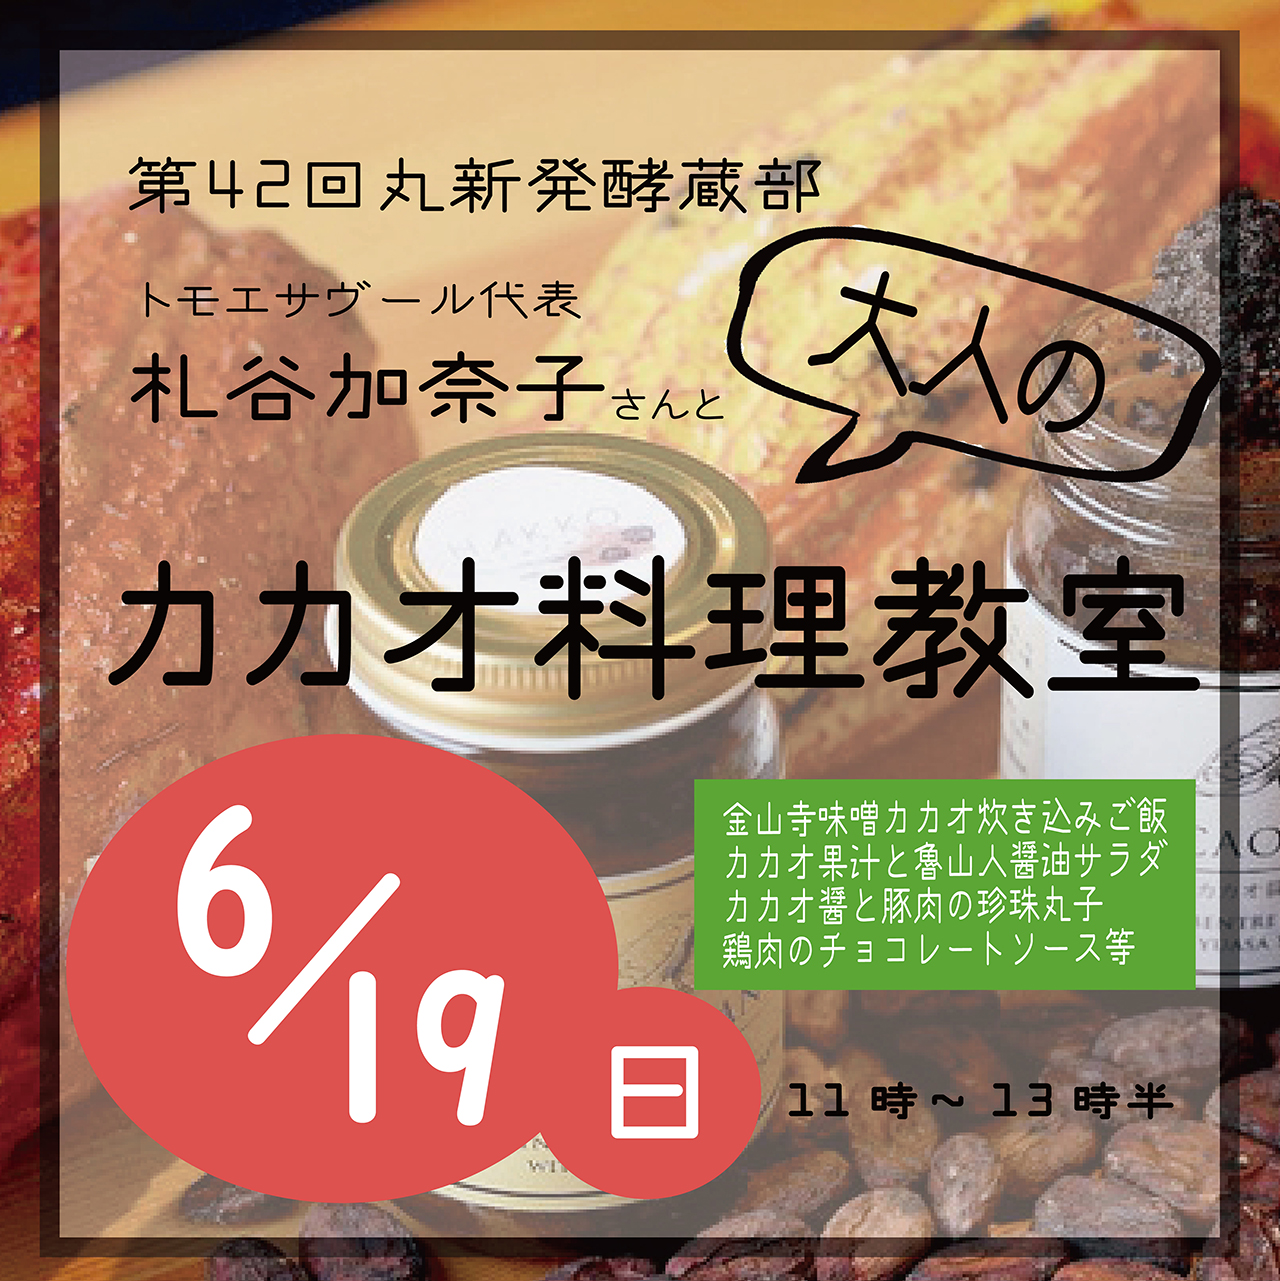 【6/19 (日）開催】和歌山湯浅醤油・大人のカカオ料理講座